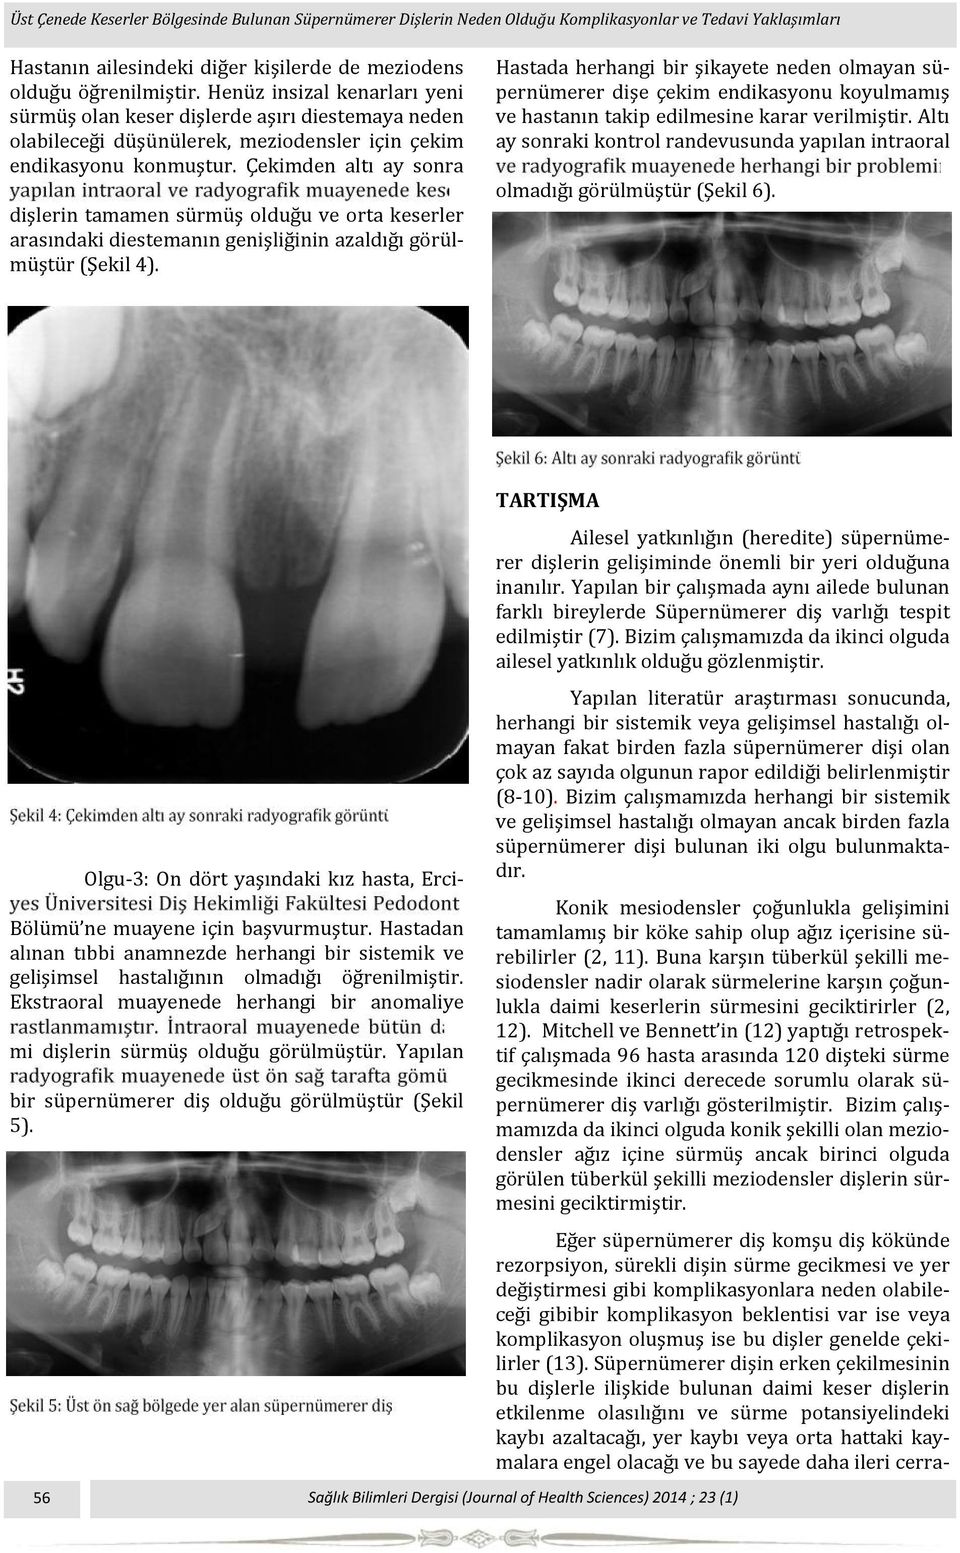 Çekimden altı ay sonra dişlerin tamamen su rmu ş oldug u ve orta keserler arasındaki diestemanın genişlig inin azaldıg ı go ru l- mu ştu r (Şekil 4).